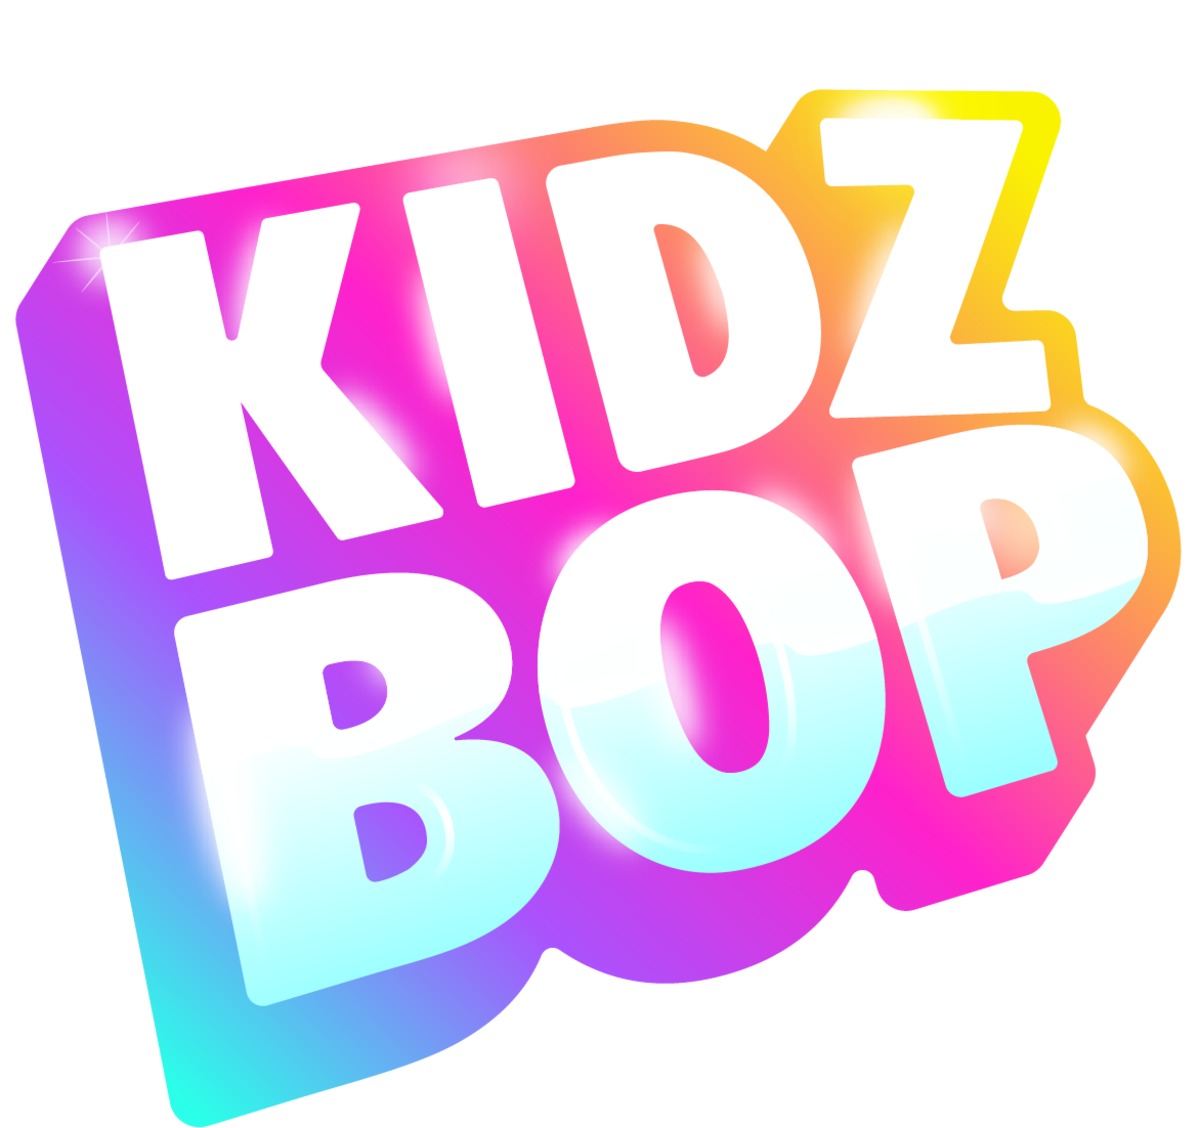 Kidz Bop Kids - Kidz Bop Christmas [2018]